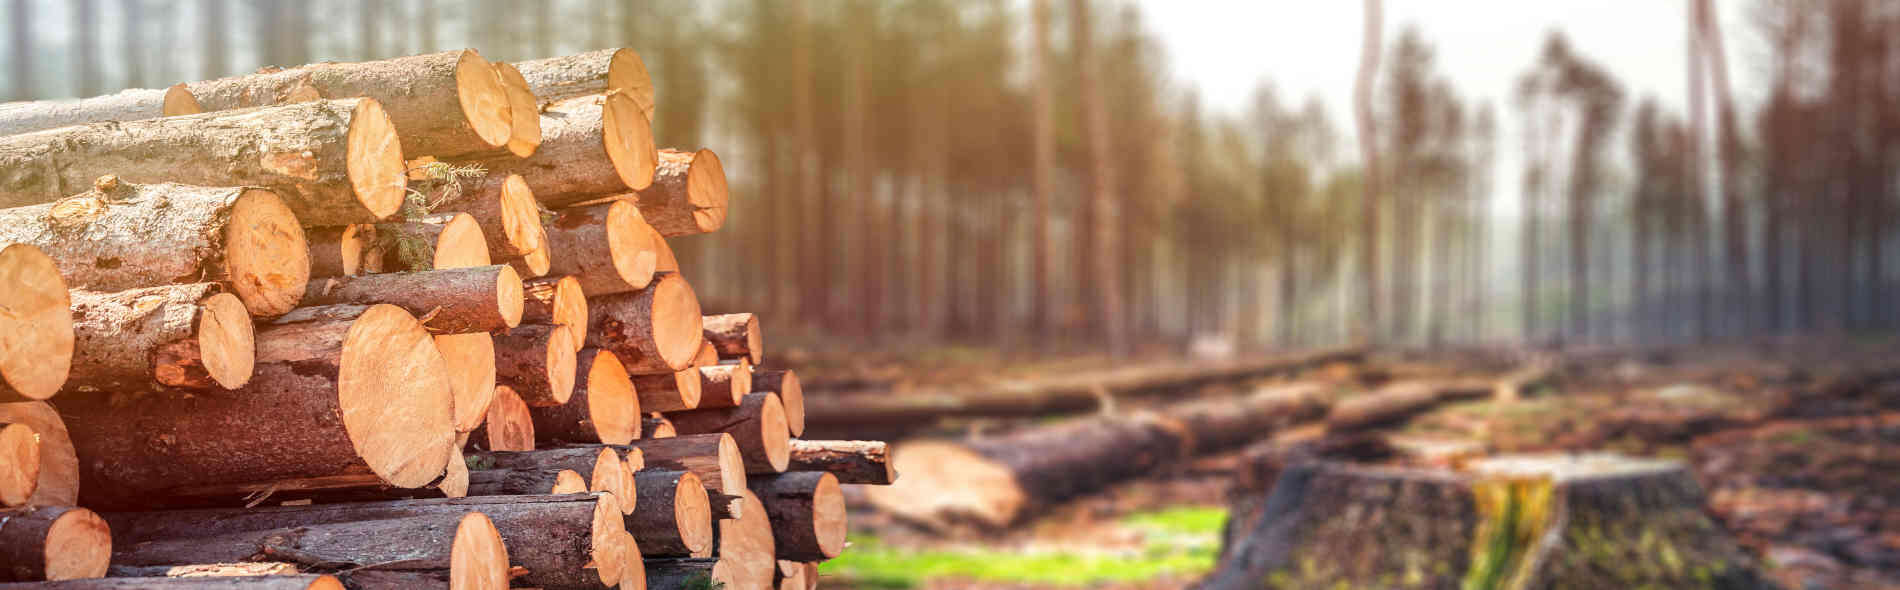 Deforestazione: impatto e soluzioni per salvaguardare il pianeta